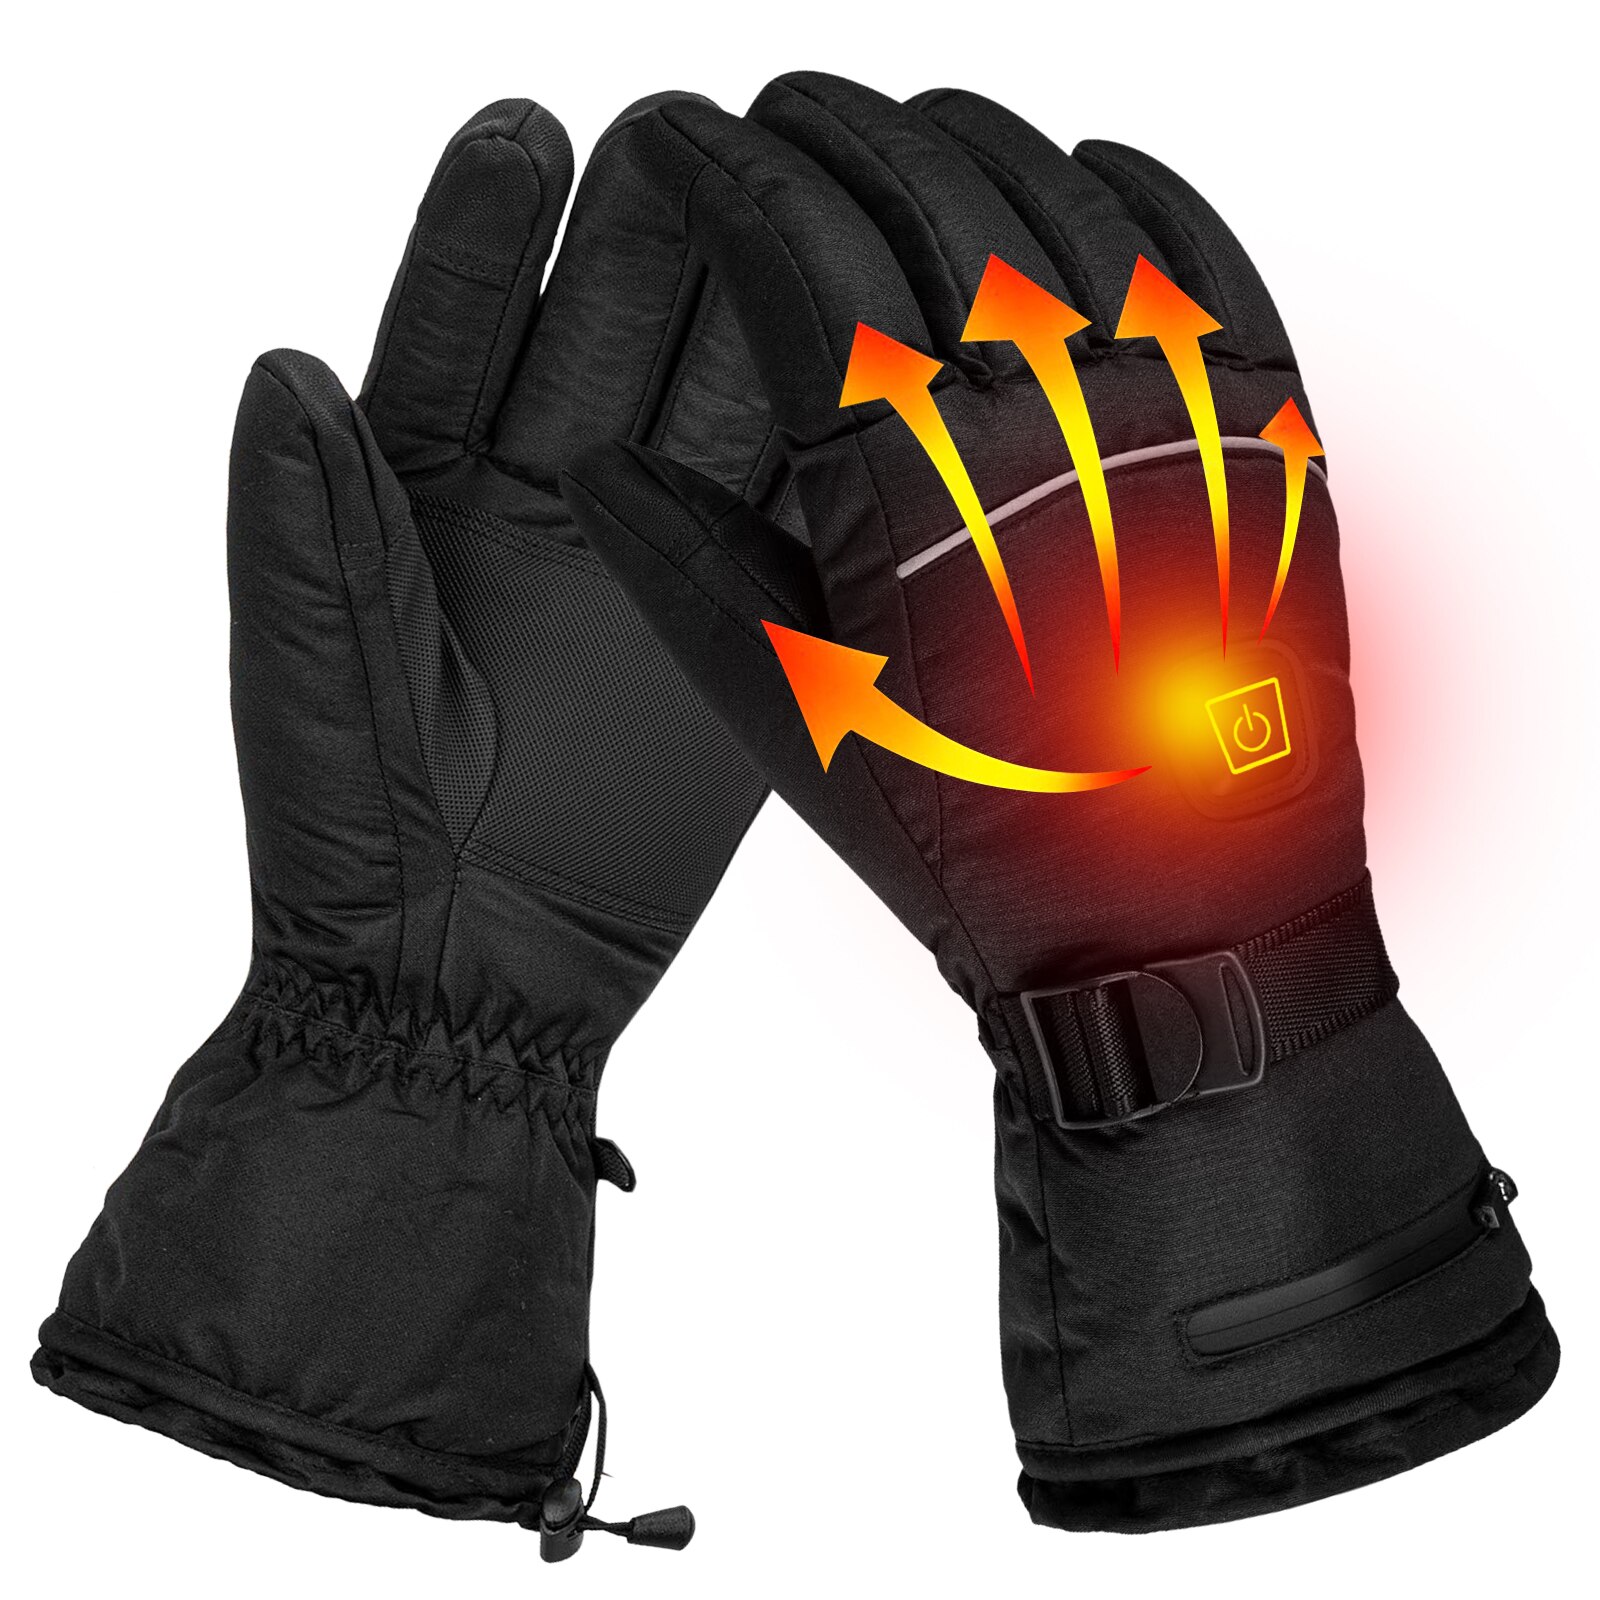 Opvarmede handsker til mænd kvinder elektriske vinter termiske berøringsskærm opvarmningshandsker til cykling vandring ski snowboardhandsker: Sort / Xl